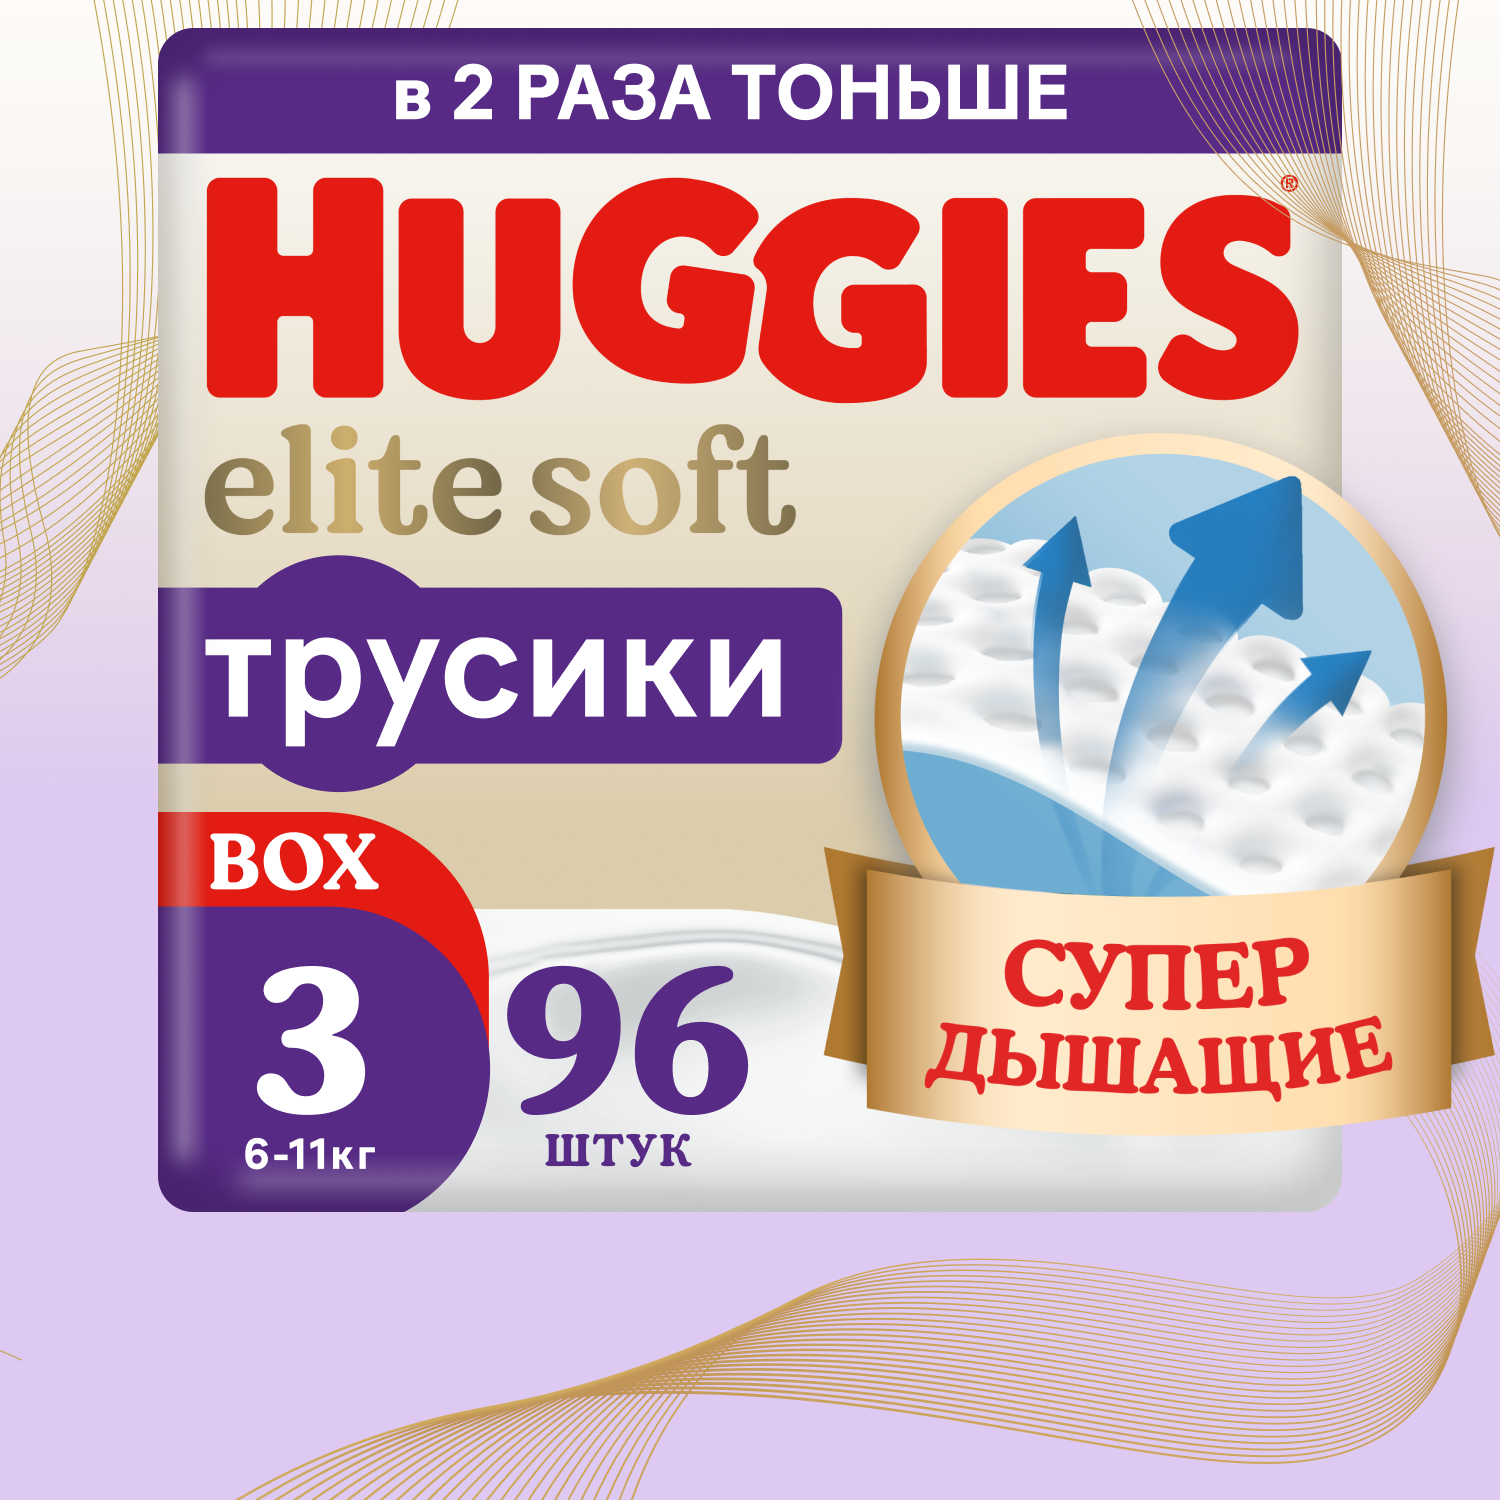 Подгузники трусики Huggies Elite Soft 6-11кг, 3 размер, 96шт, 